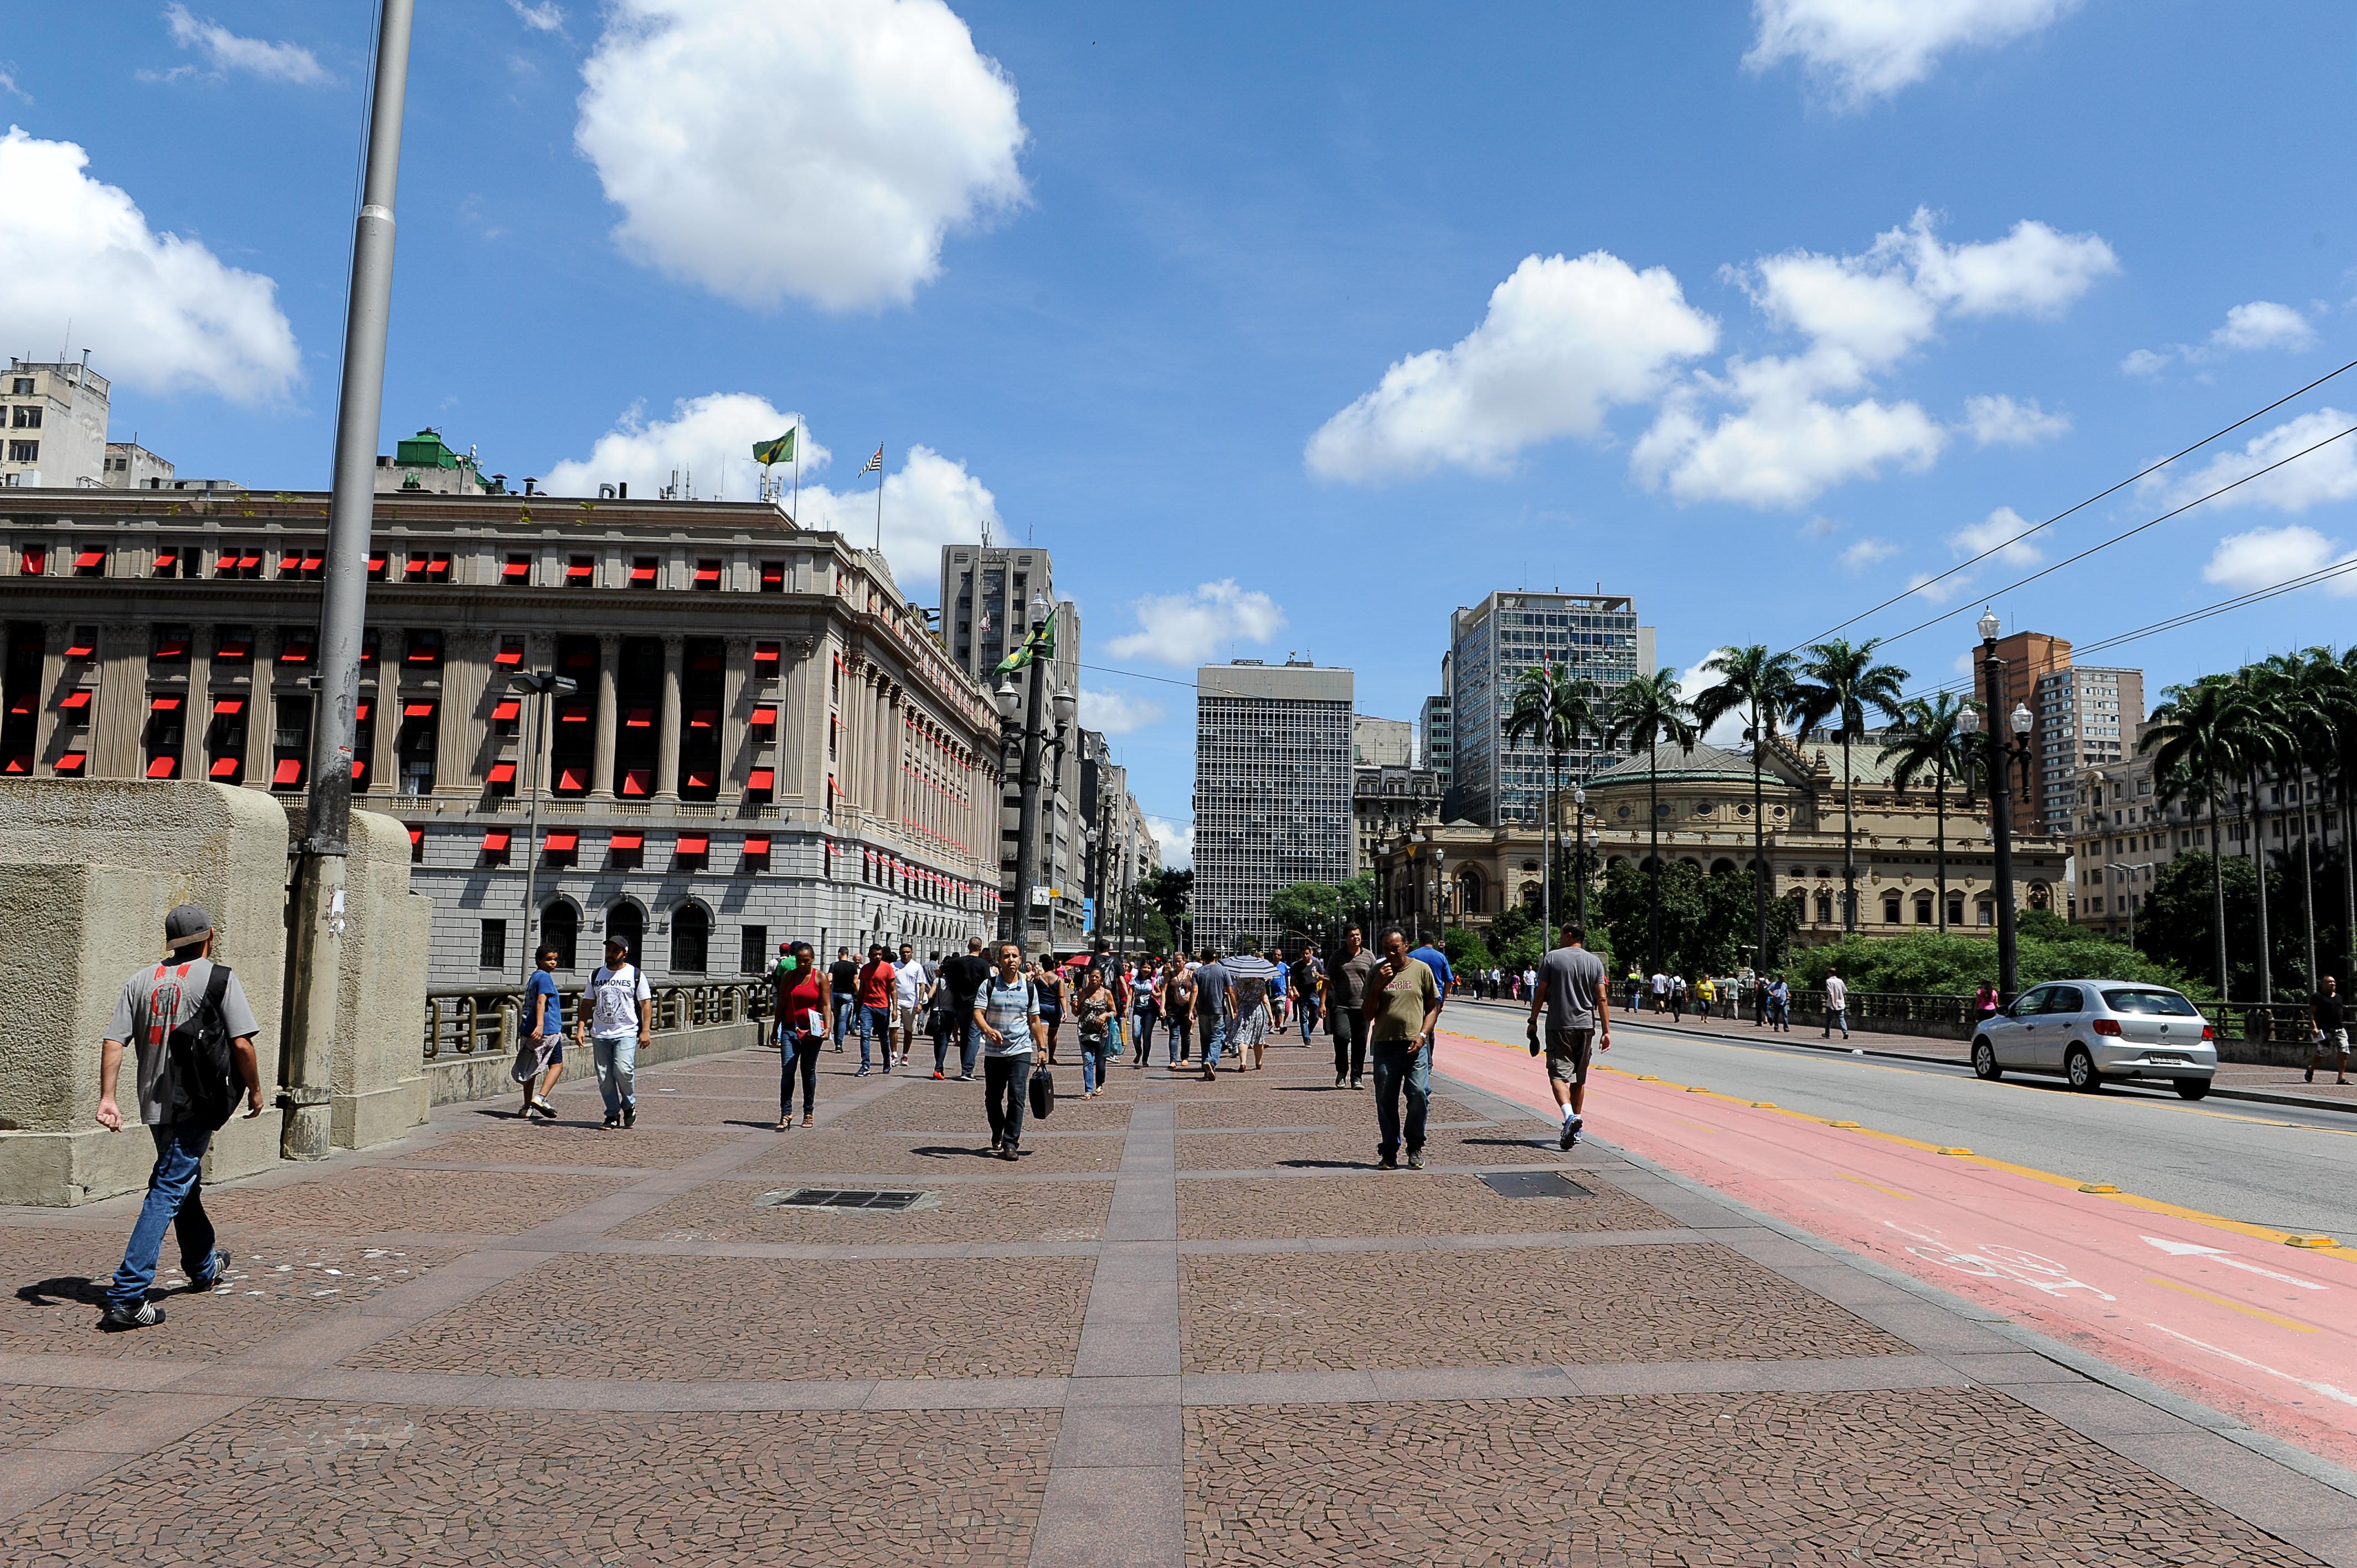 Geociências da USP promove roteiro pra conhecer história da geologia urbana de São Paulo